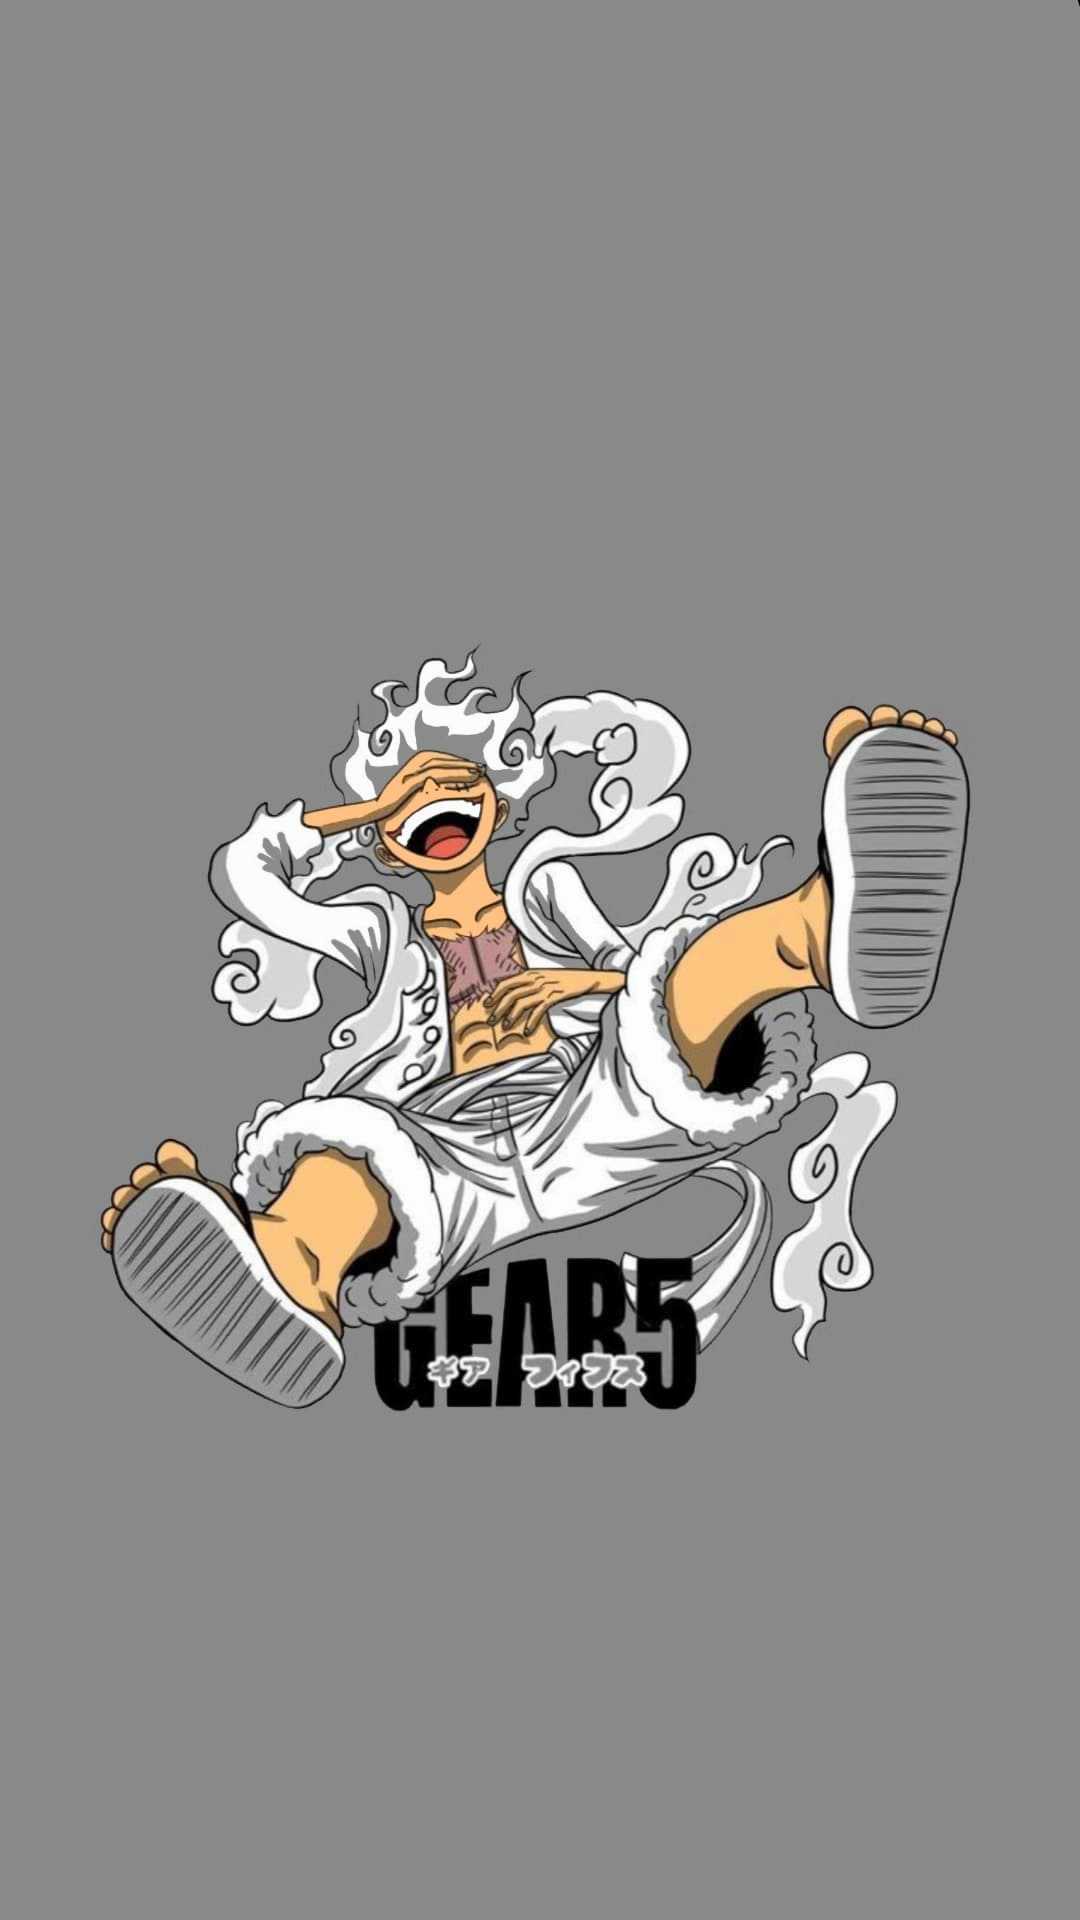 Gear 5 One Piece Wallpaper - iXpap